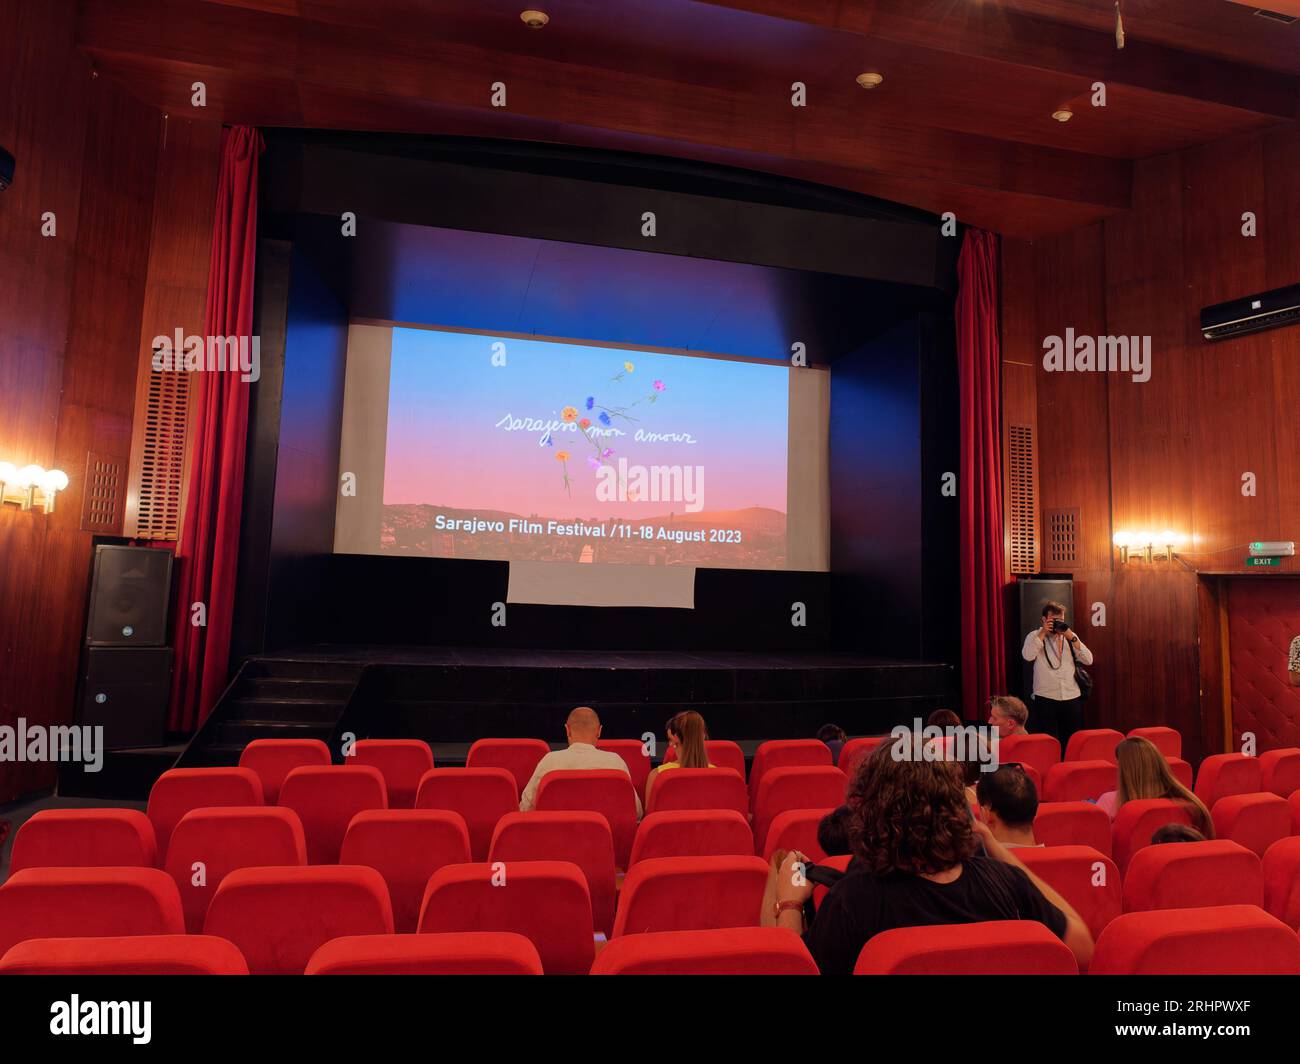 Kino-Inneneinrichtung während des Sarajevo Film Festivals, Sarajevo, Bosnien und Herzegowina, 18. August 2023 Stockfoto